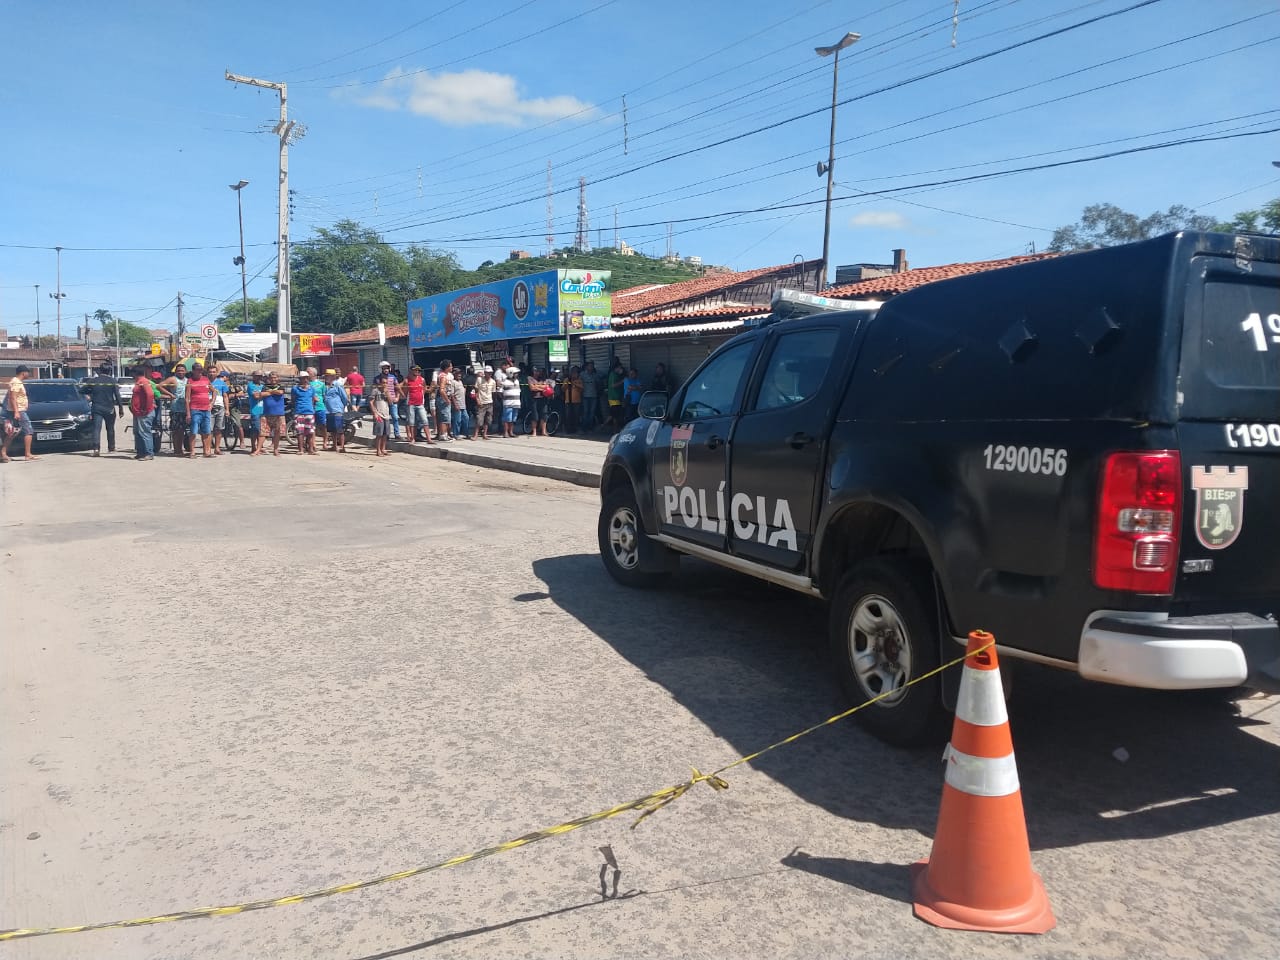 Registrados 10 Homicidios Em Pernambuco Em 24 Horas Em Caruaru Aconteceram Assassinato E Tentativa Radio Liberdaderadio Liberdade